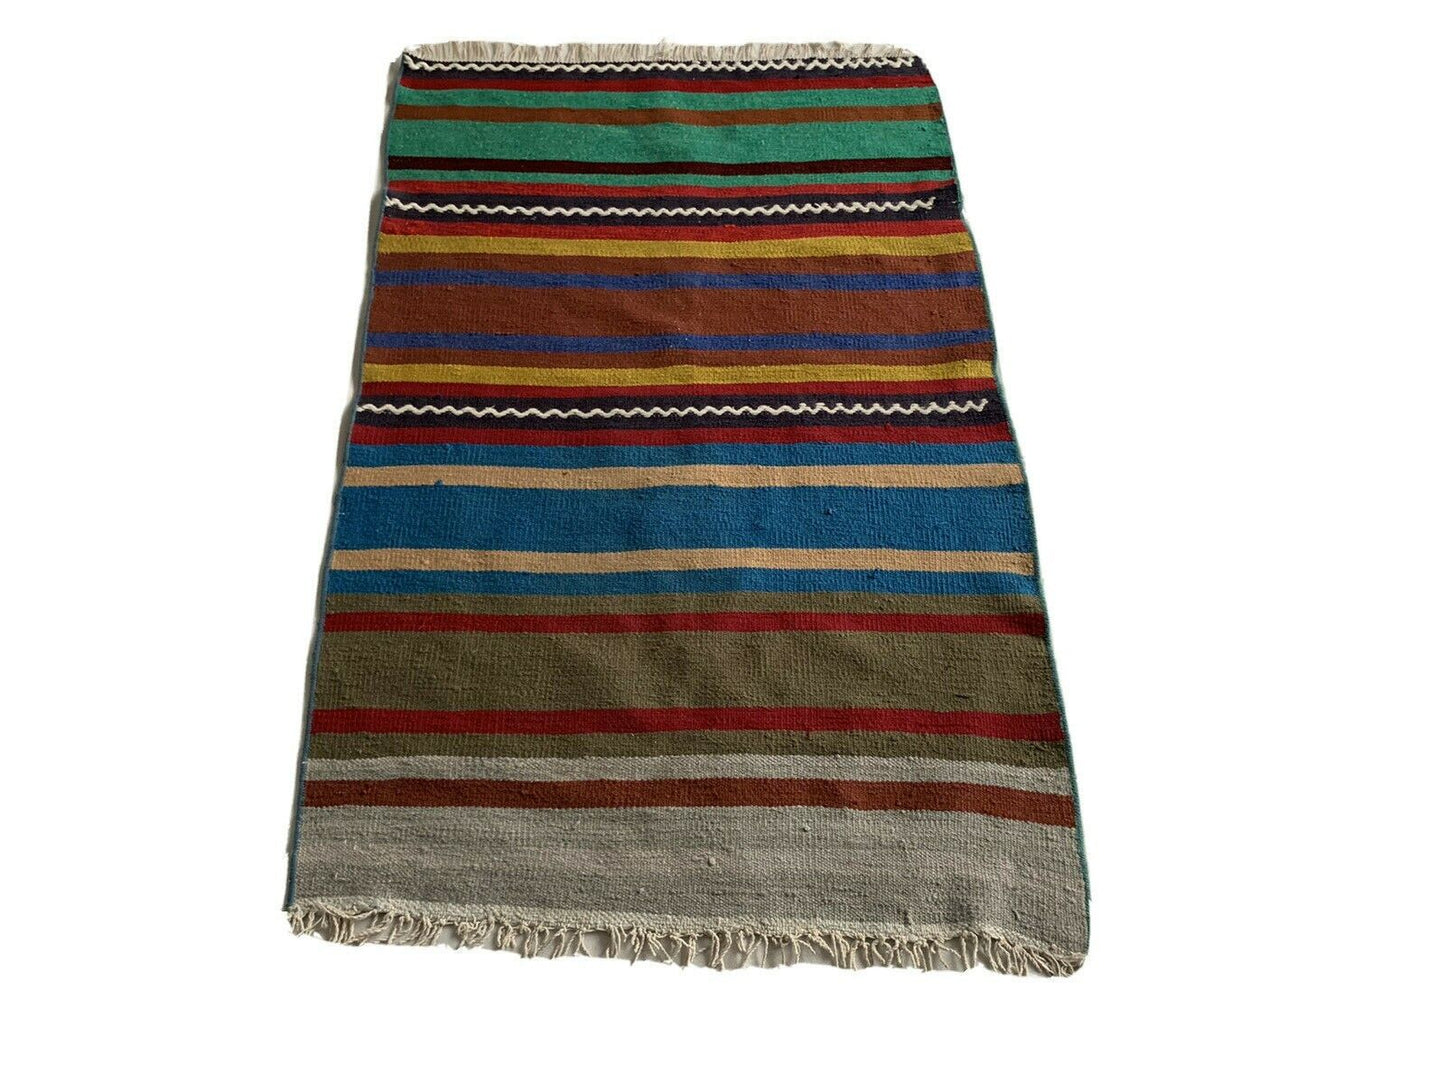 Traditional Turkish Kilim Carpet, Vintage Wool Country Kilim 125x80 Cm